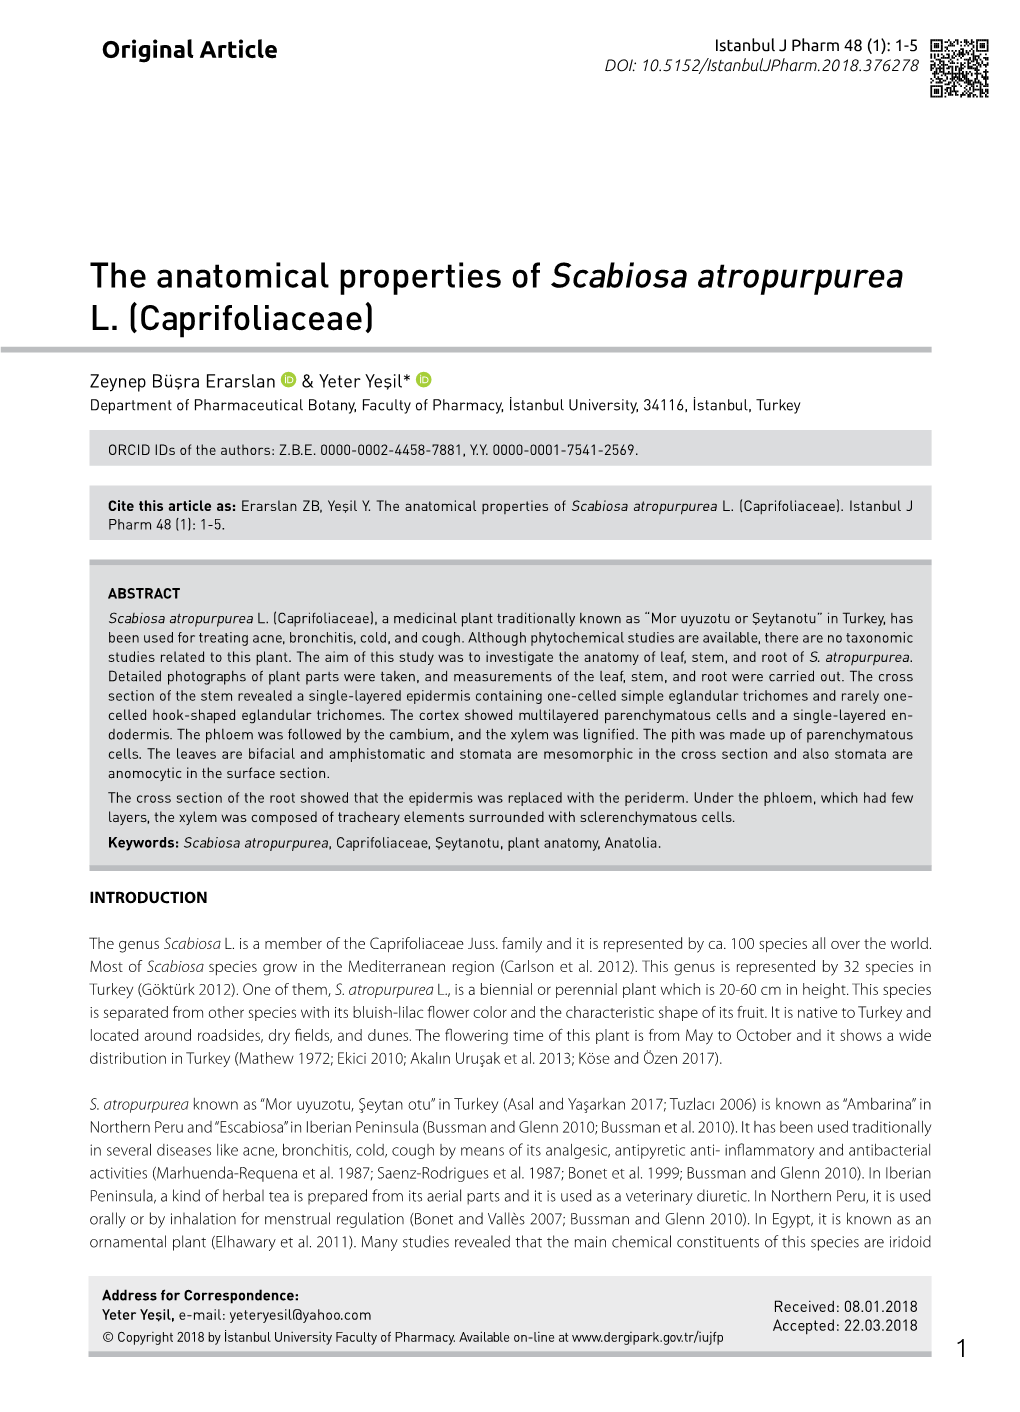 The Anatomical Properties of Scabiosa Atropurpurea L